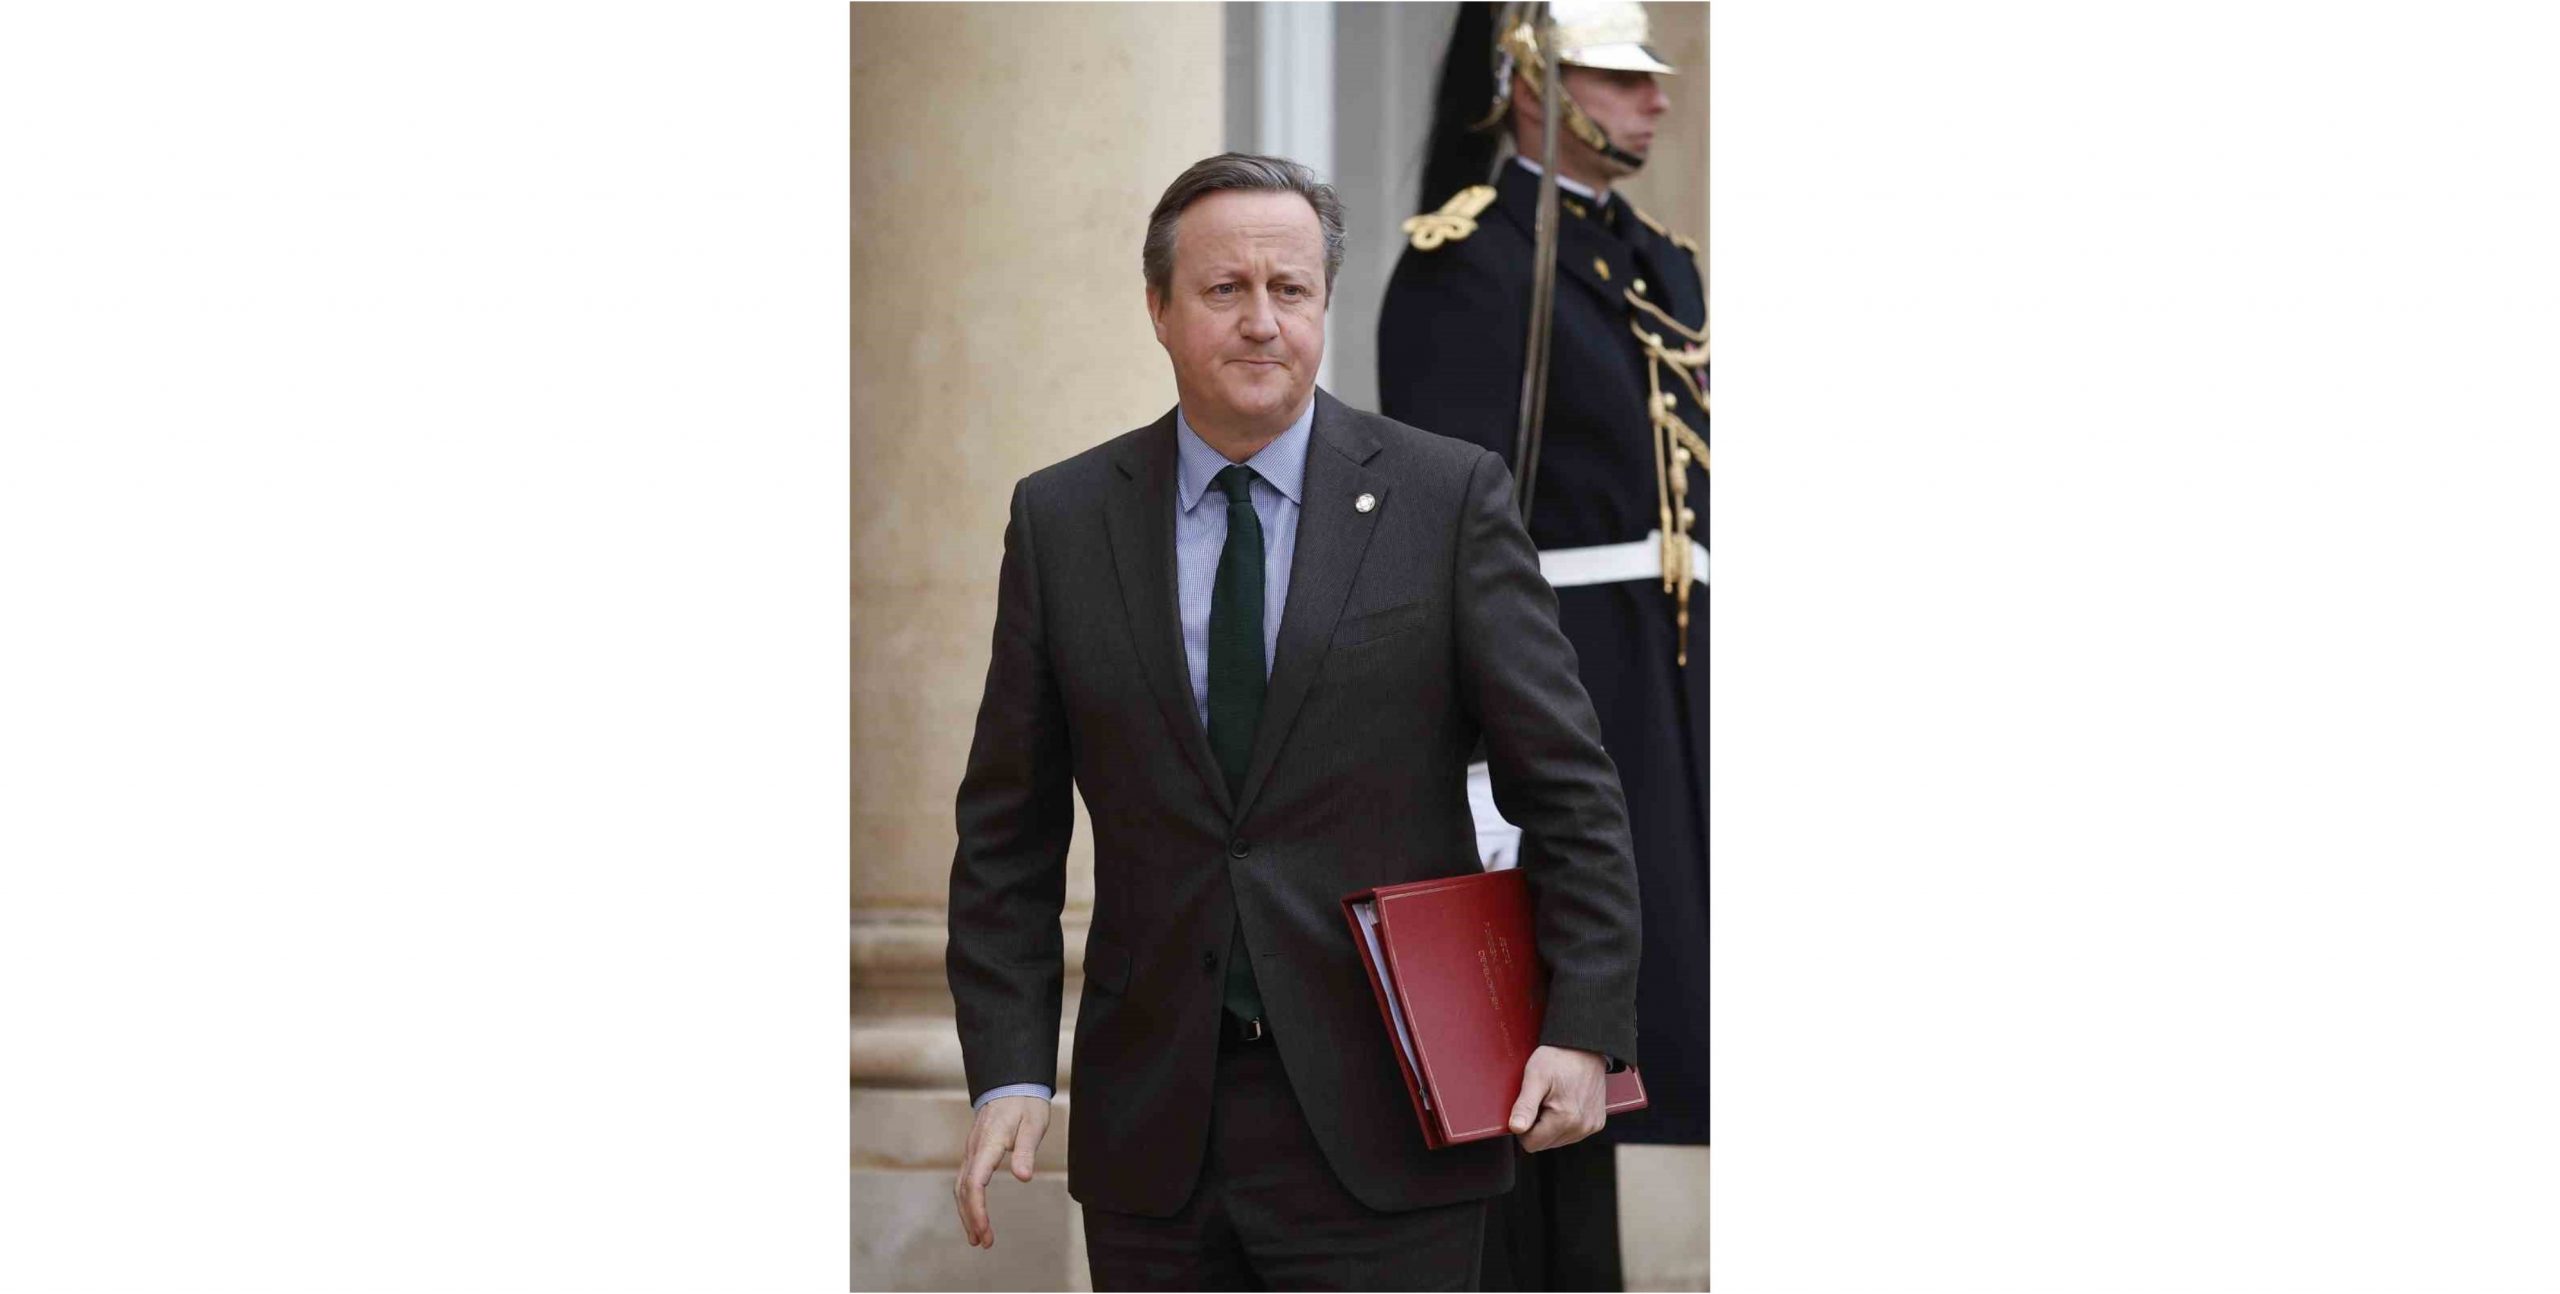 İngiltere Dışişleri Bakanı Cameron: “Yardım konvoyunu bekleyen insanların ölümü acilen soruşturulmalı”